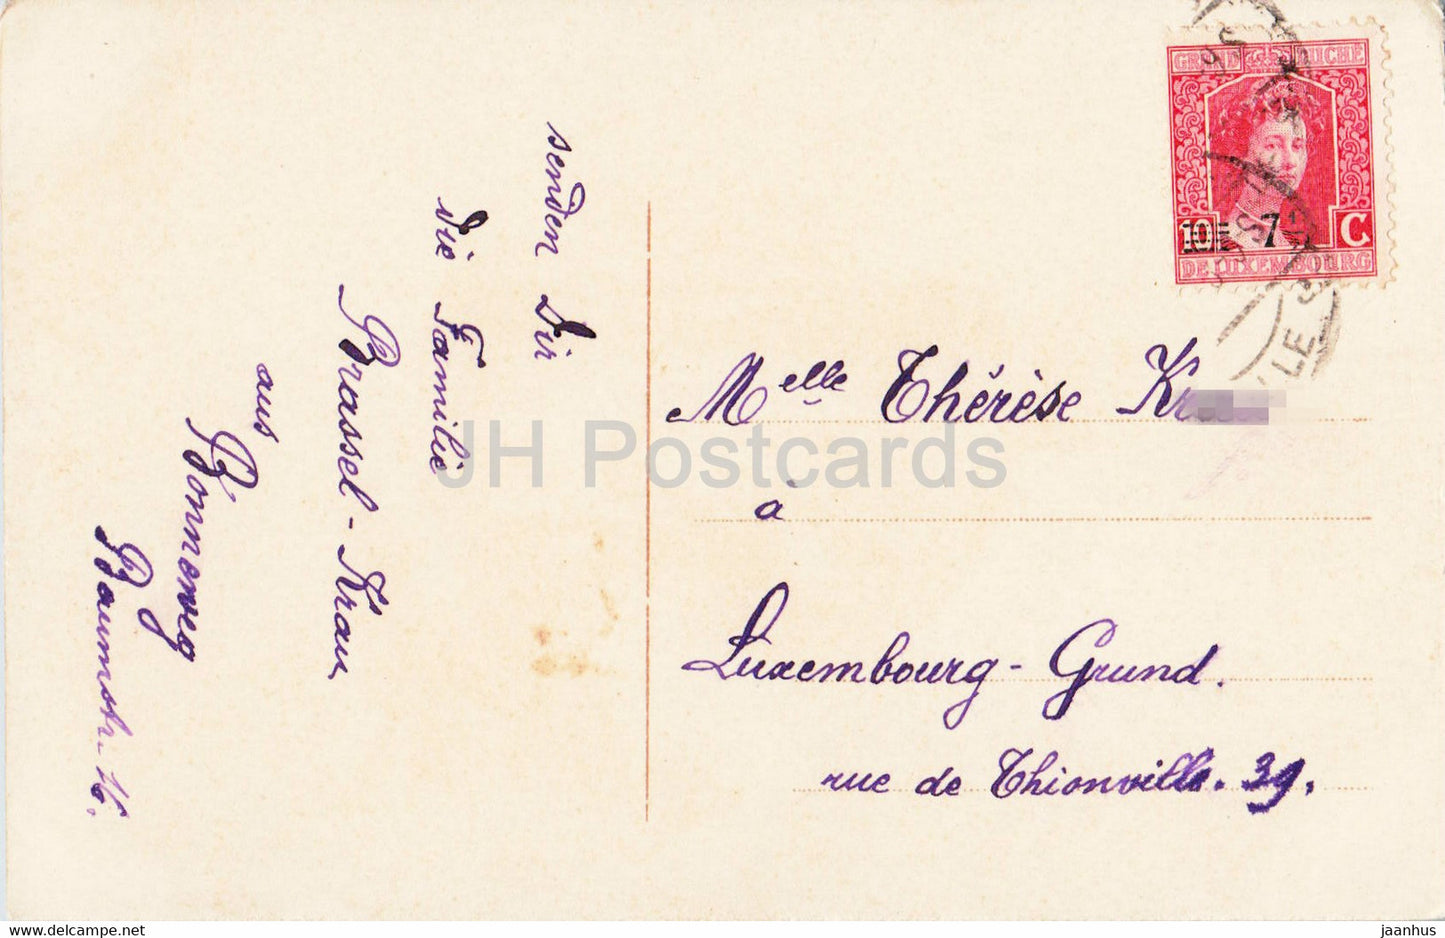 New Year Greeting Card - Die besten Gluckwunsche zum neuen Jahre - old postcard - Luxembourg - used